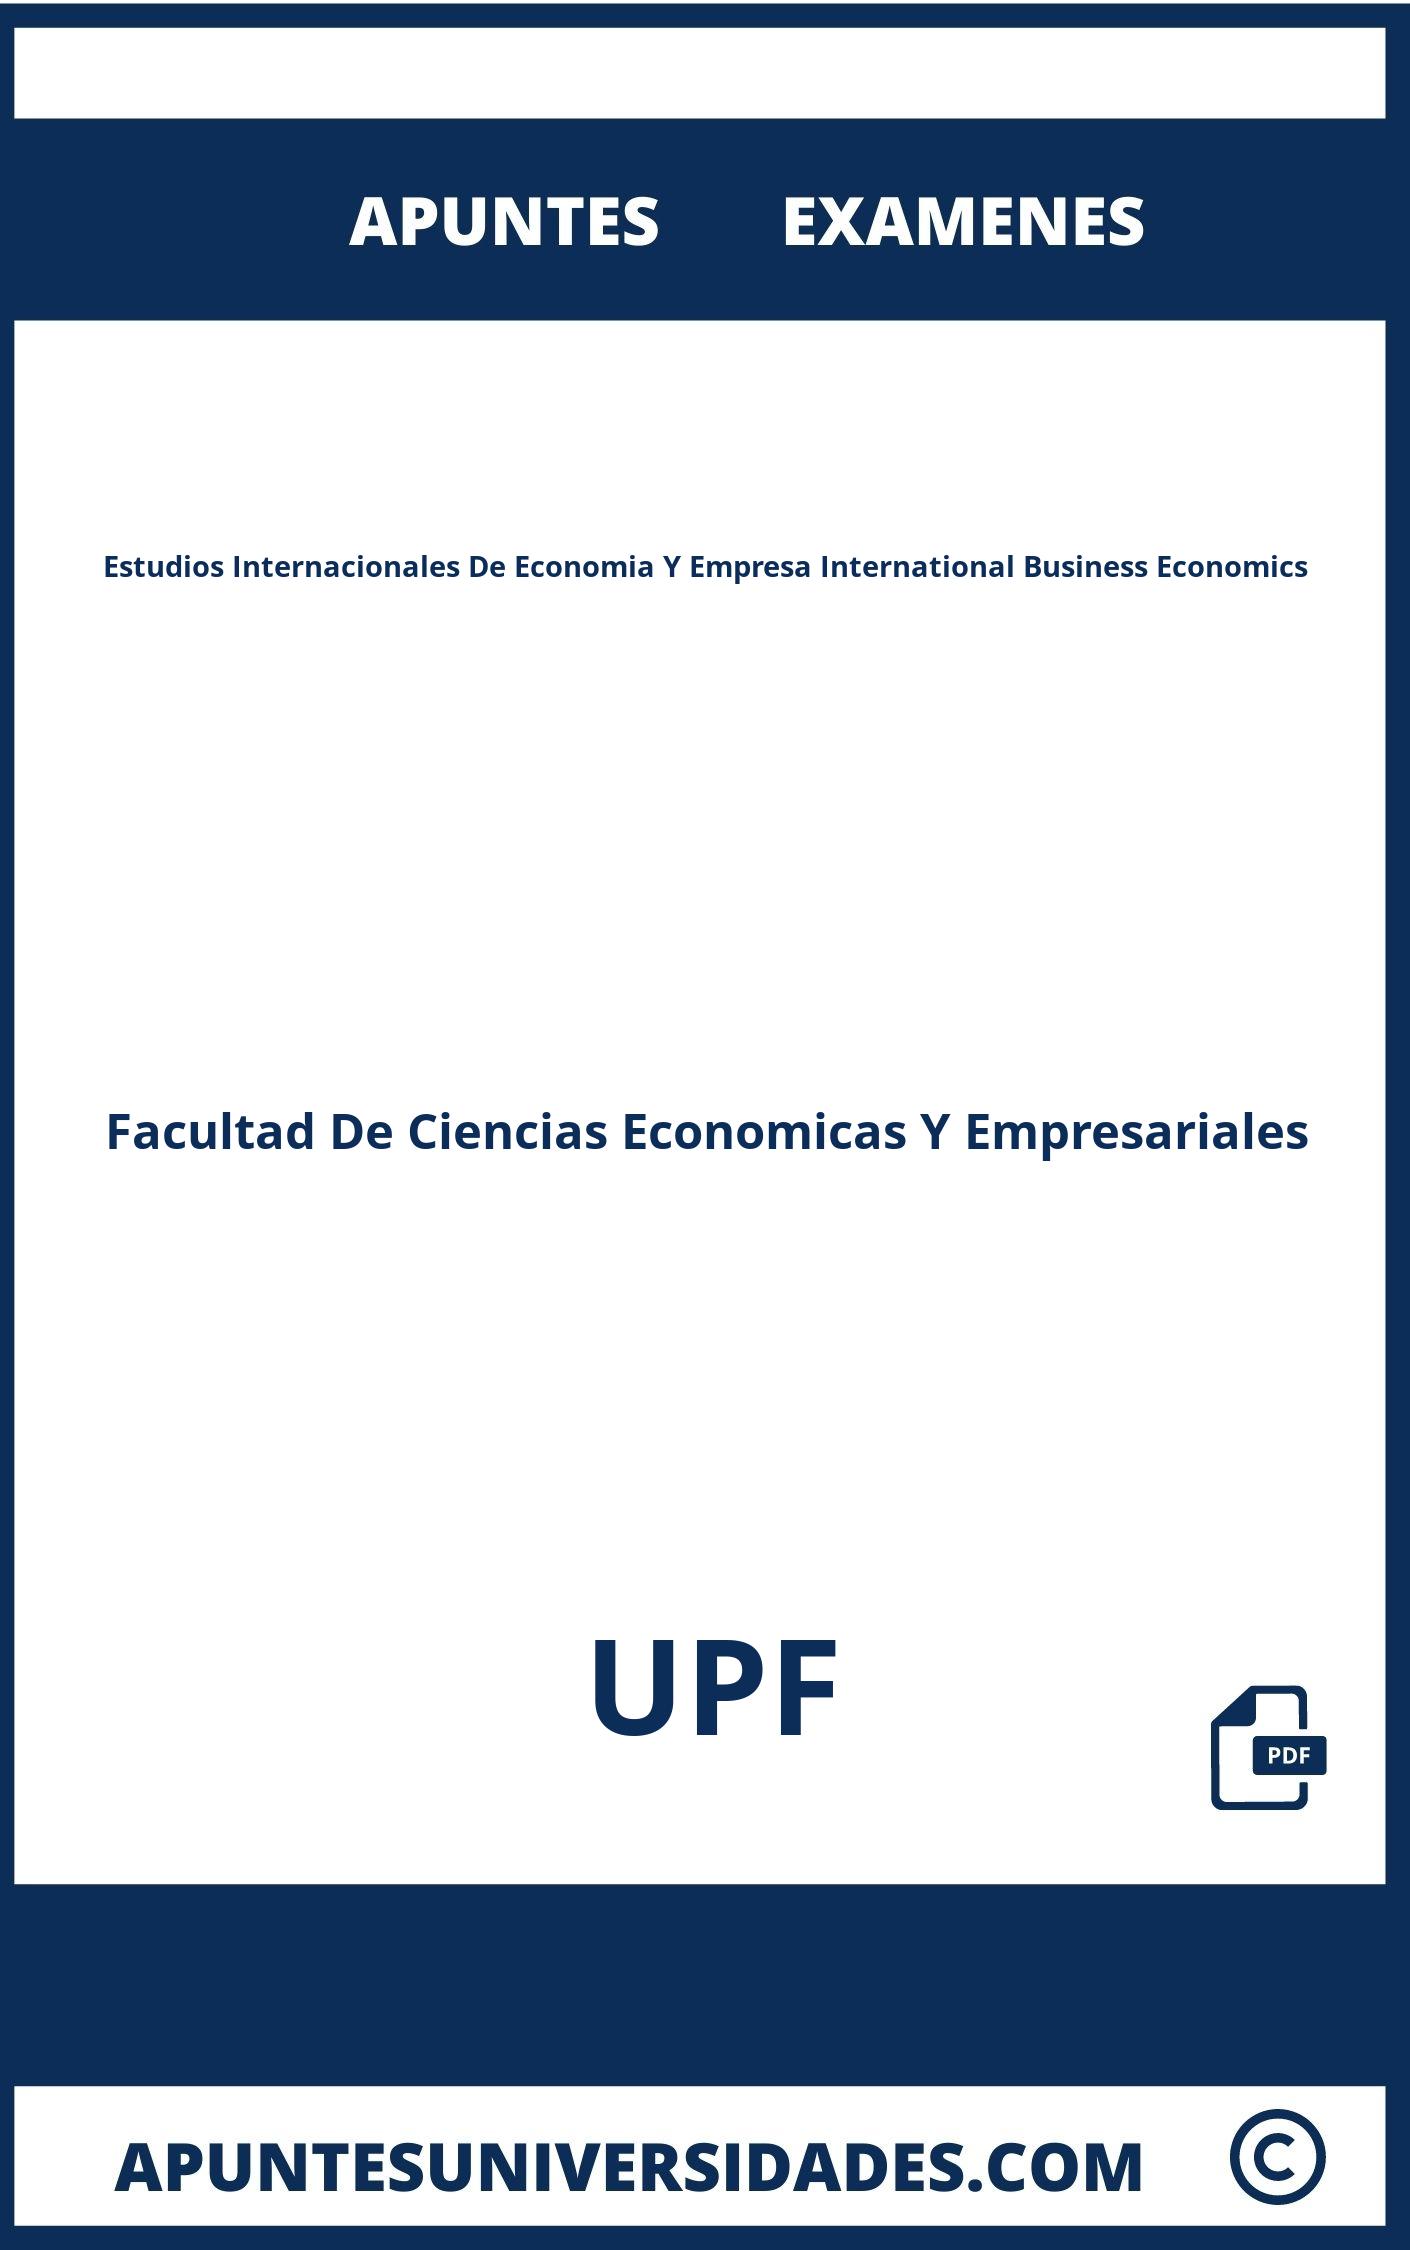 Apuntes y Examenes de Estudios Internacionales De Economia Y Empresa International Business Economics UPF